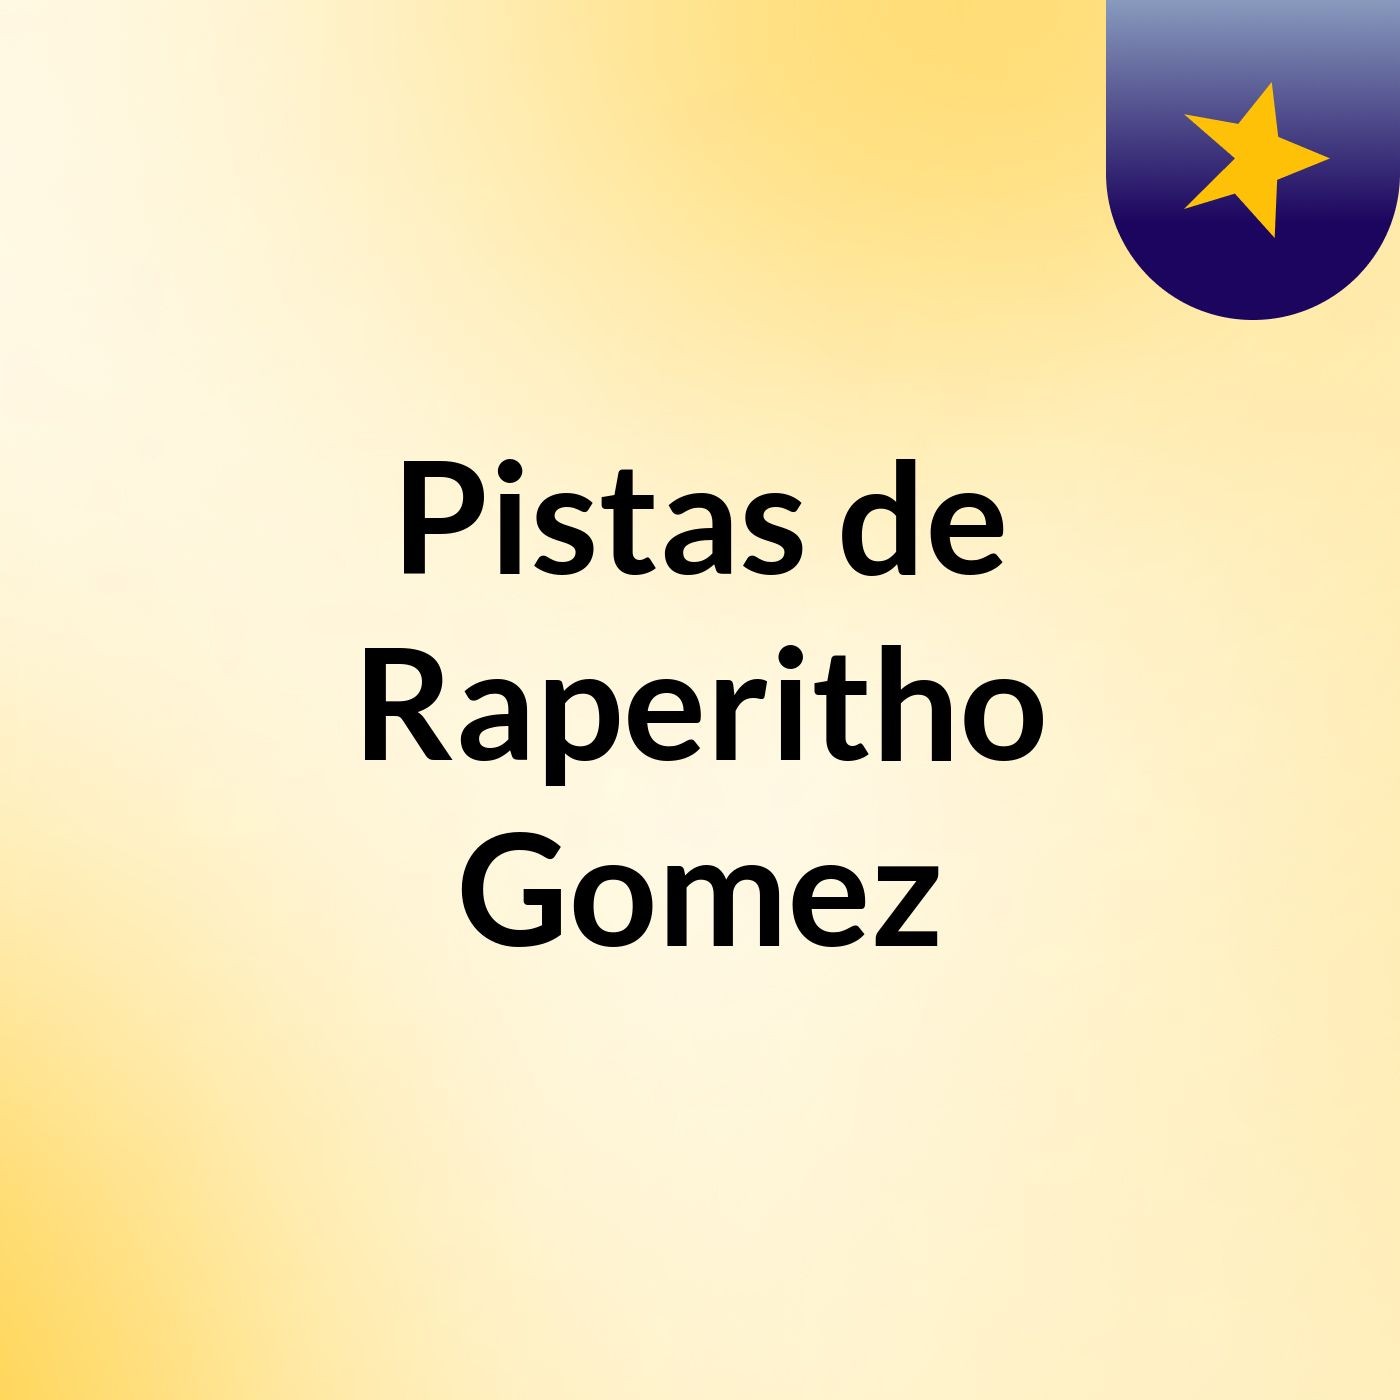 Pistas de Raperitho Gomez